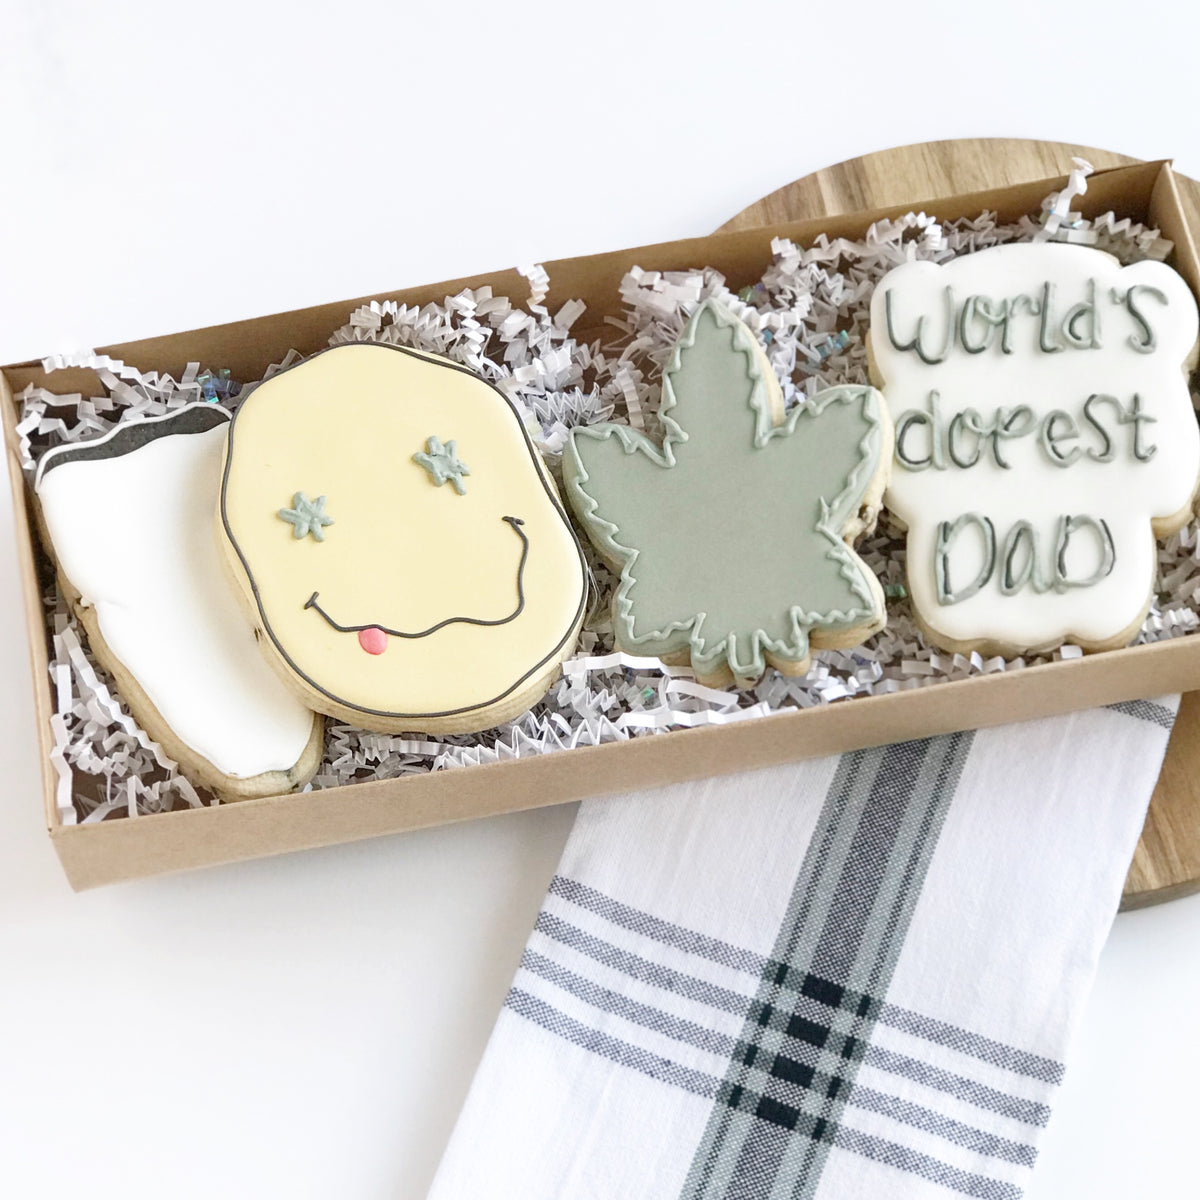 Dopest Dad 4 Piece Cookie Cutter Set